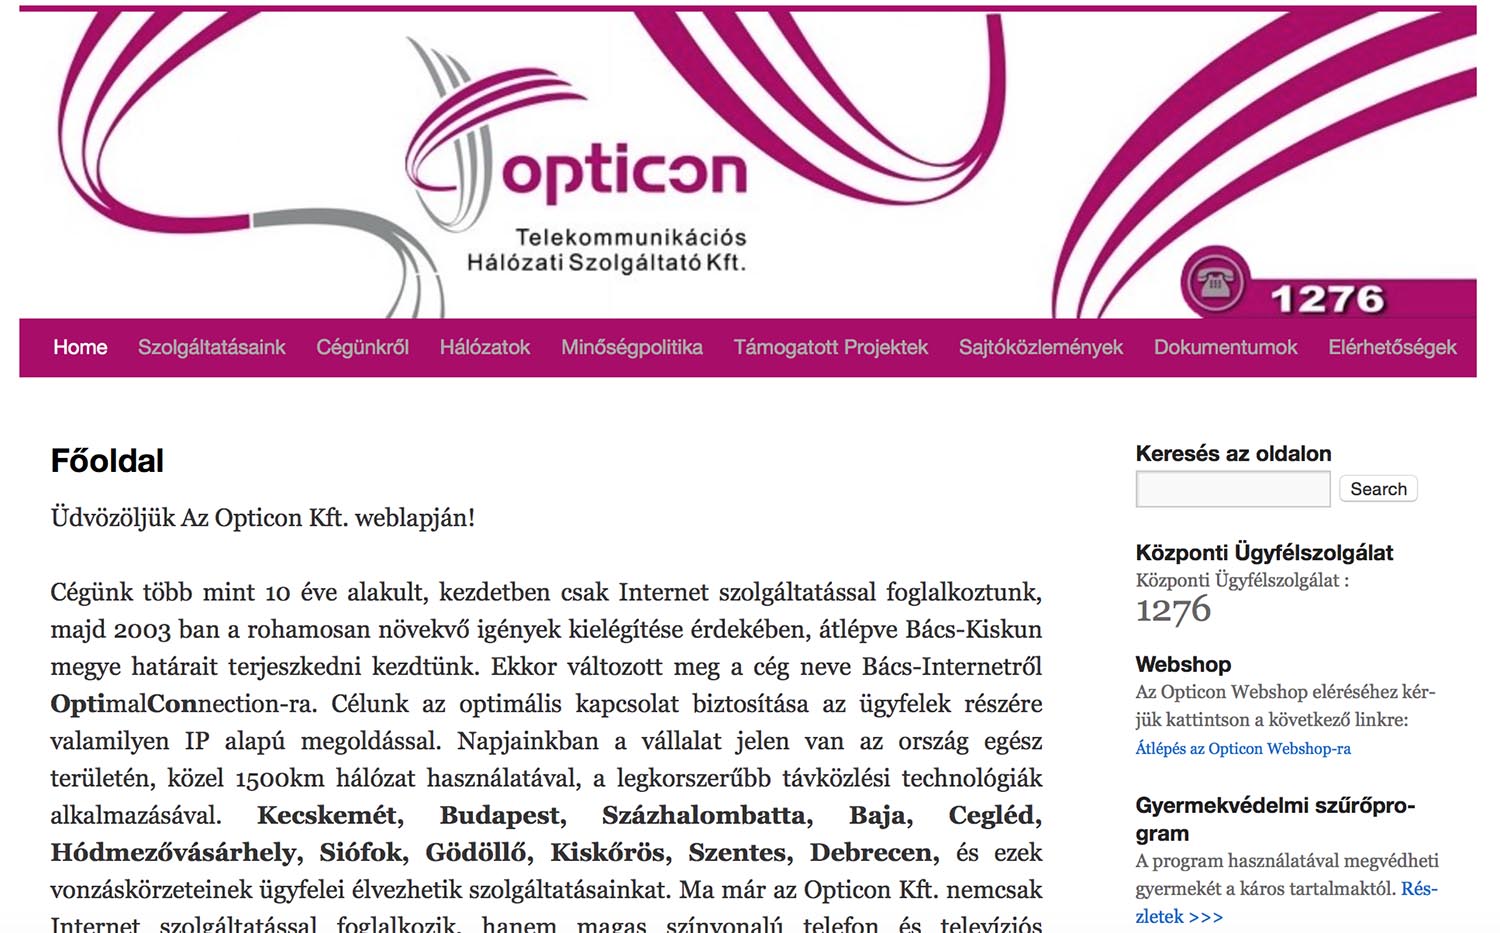 Opticon - Másfél milliárdért fejlesztenek optikai hálózatot több kistérségben